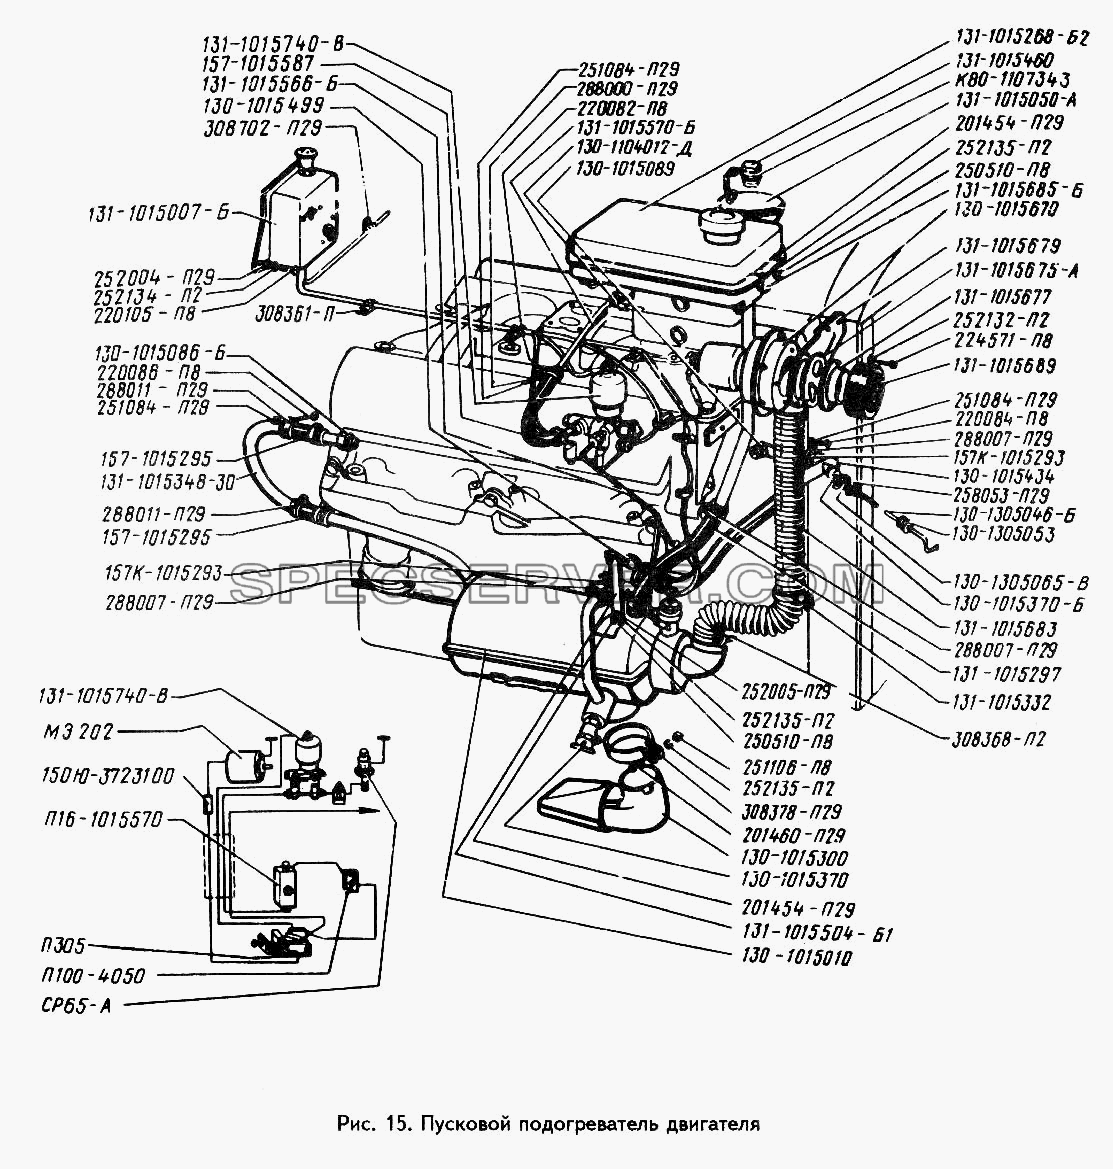 Пусковой подогреватель двигателя (Устанавливается по требованию заказчика) для ЗИЛ 442160 (список запасных частей)